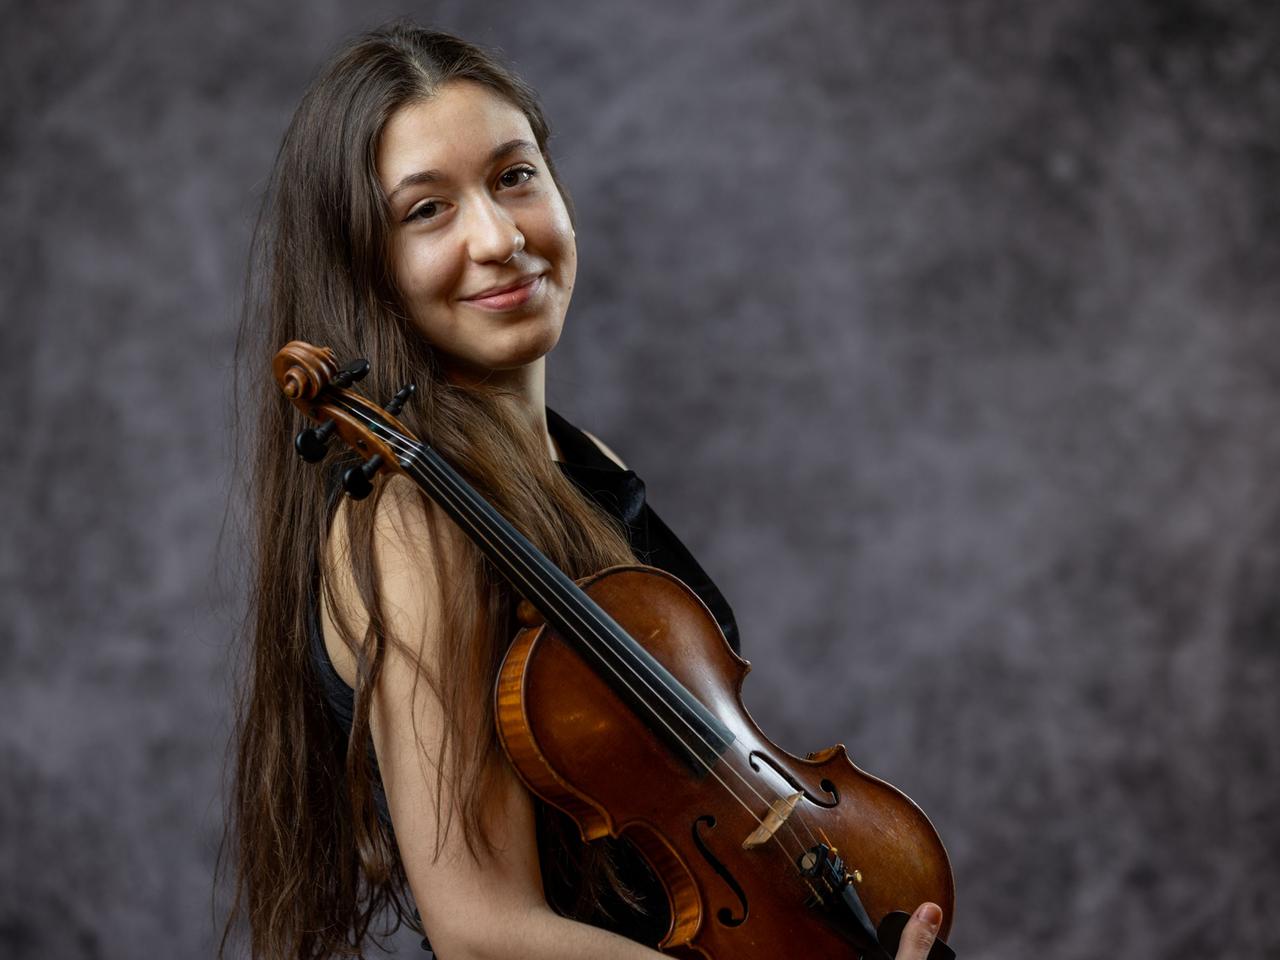 Dana Bostedt lacht mit ihren langen, braunen Haaren seitlich in die Kamera. Ihre Geige lehnt dabei auf ihrem Arm, gut sichtbar an ihre Schulter gelehnt.